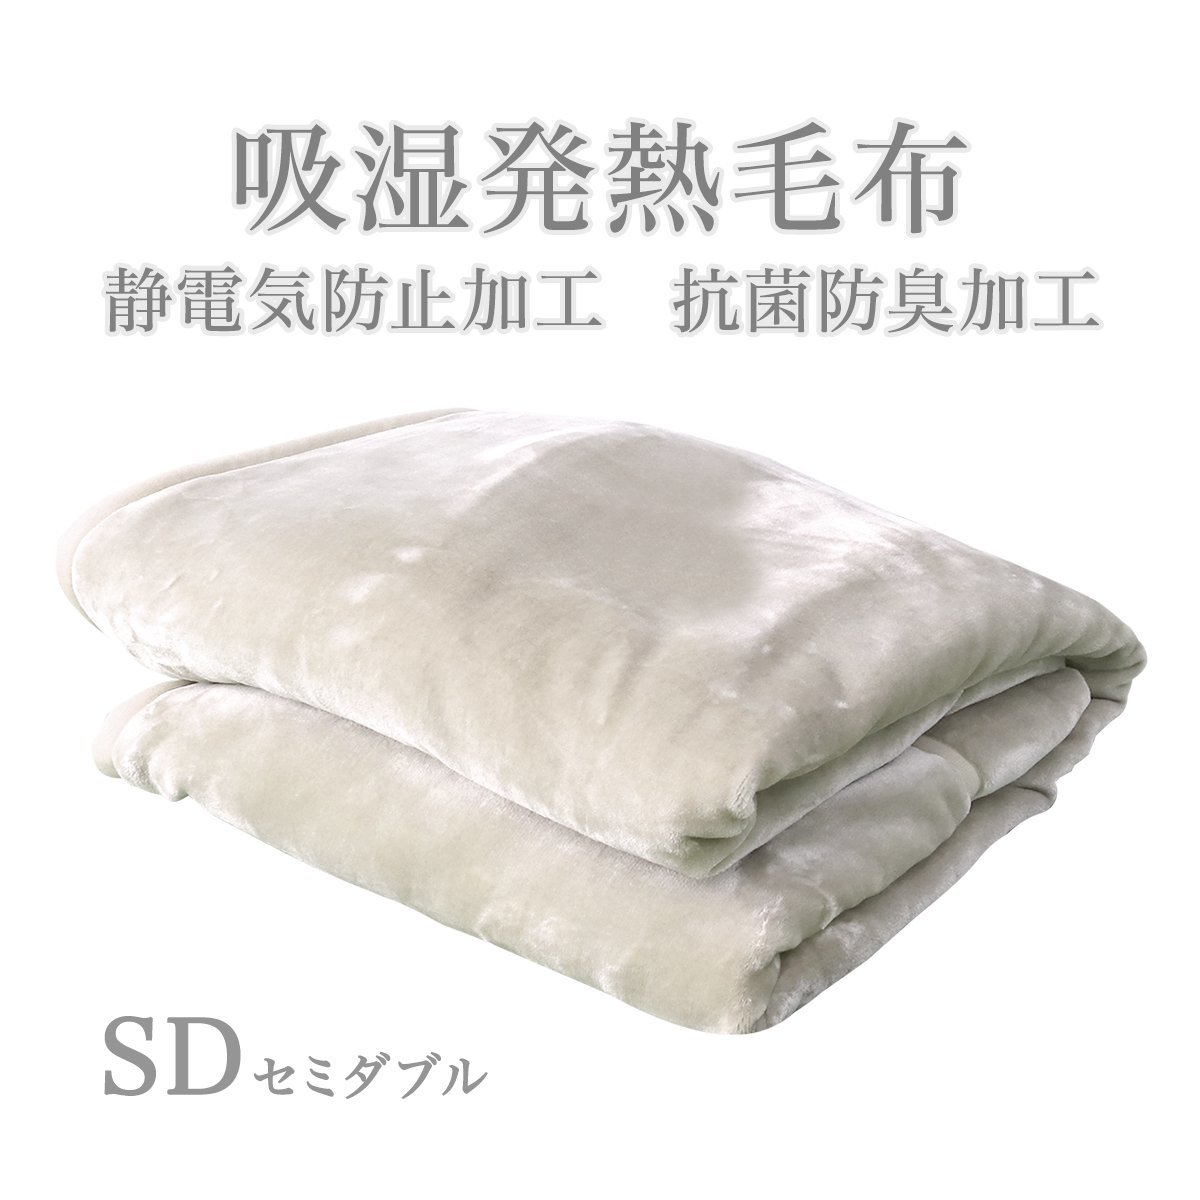 Неиспользованное полупроблемное одеяло теплое одеяло Круглая одеяло Круглая промывка может быть использована для предотвращения статического предотвращения электричества поглощение волокна Fibre Fiber Fiber Antibacterial Deodorant и мягкая модная промывка